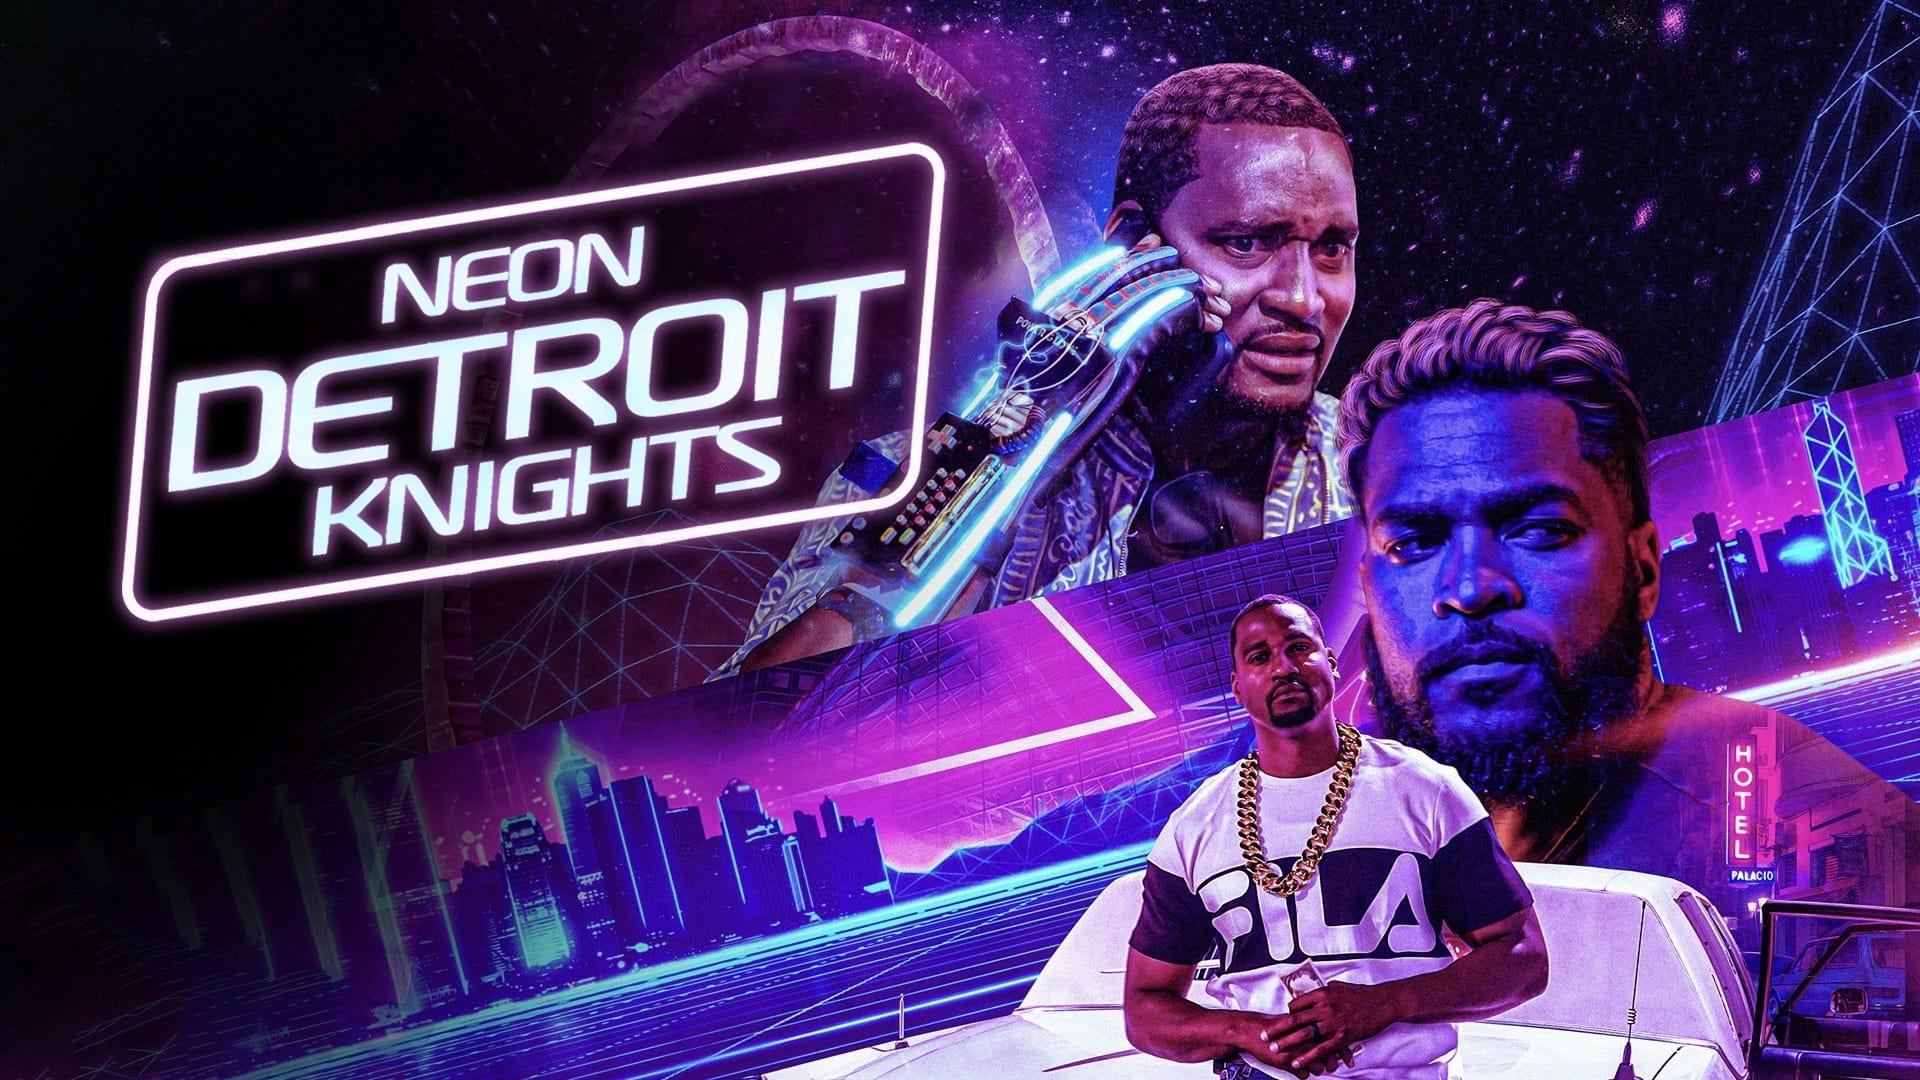 Neon Detroit Knights backdrop